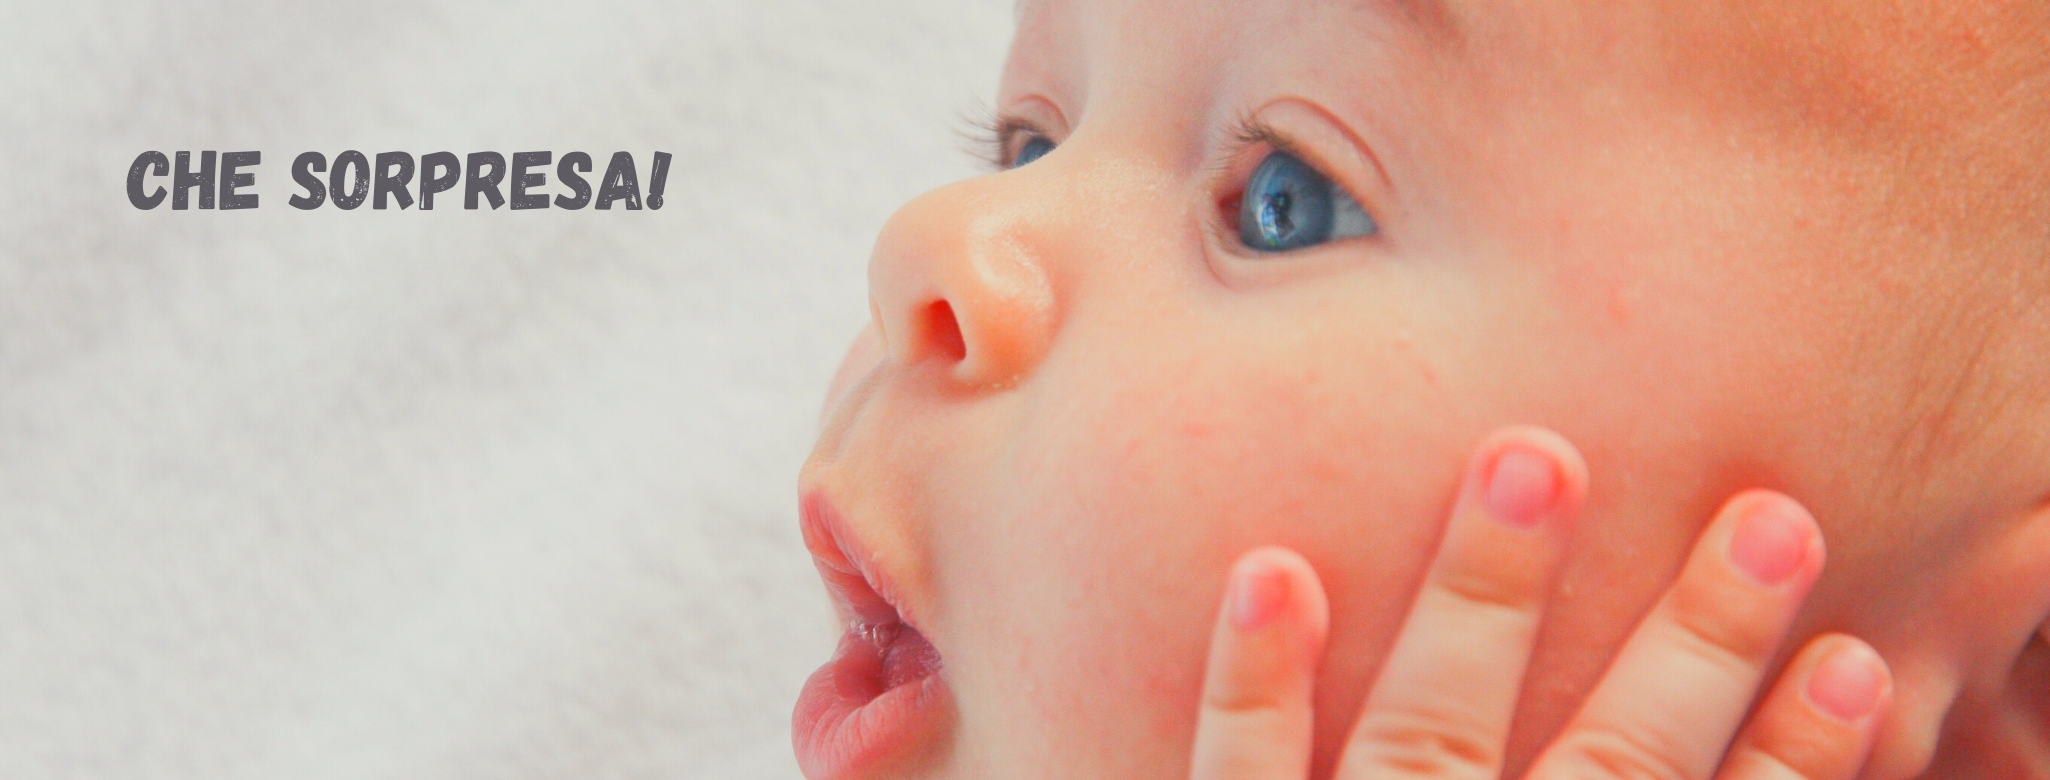 Immagine di neonato che apre la bocca a O per la sospresa. Scritta: "Che sorpresa!"